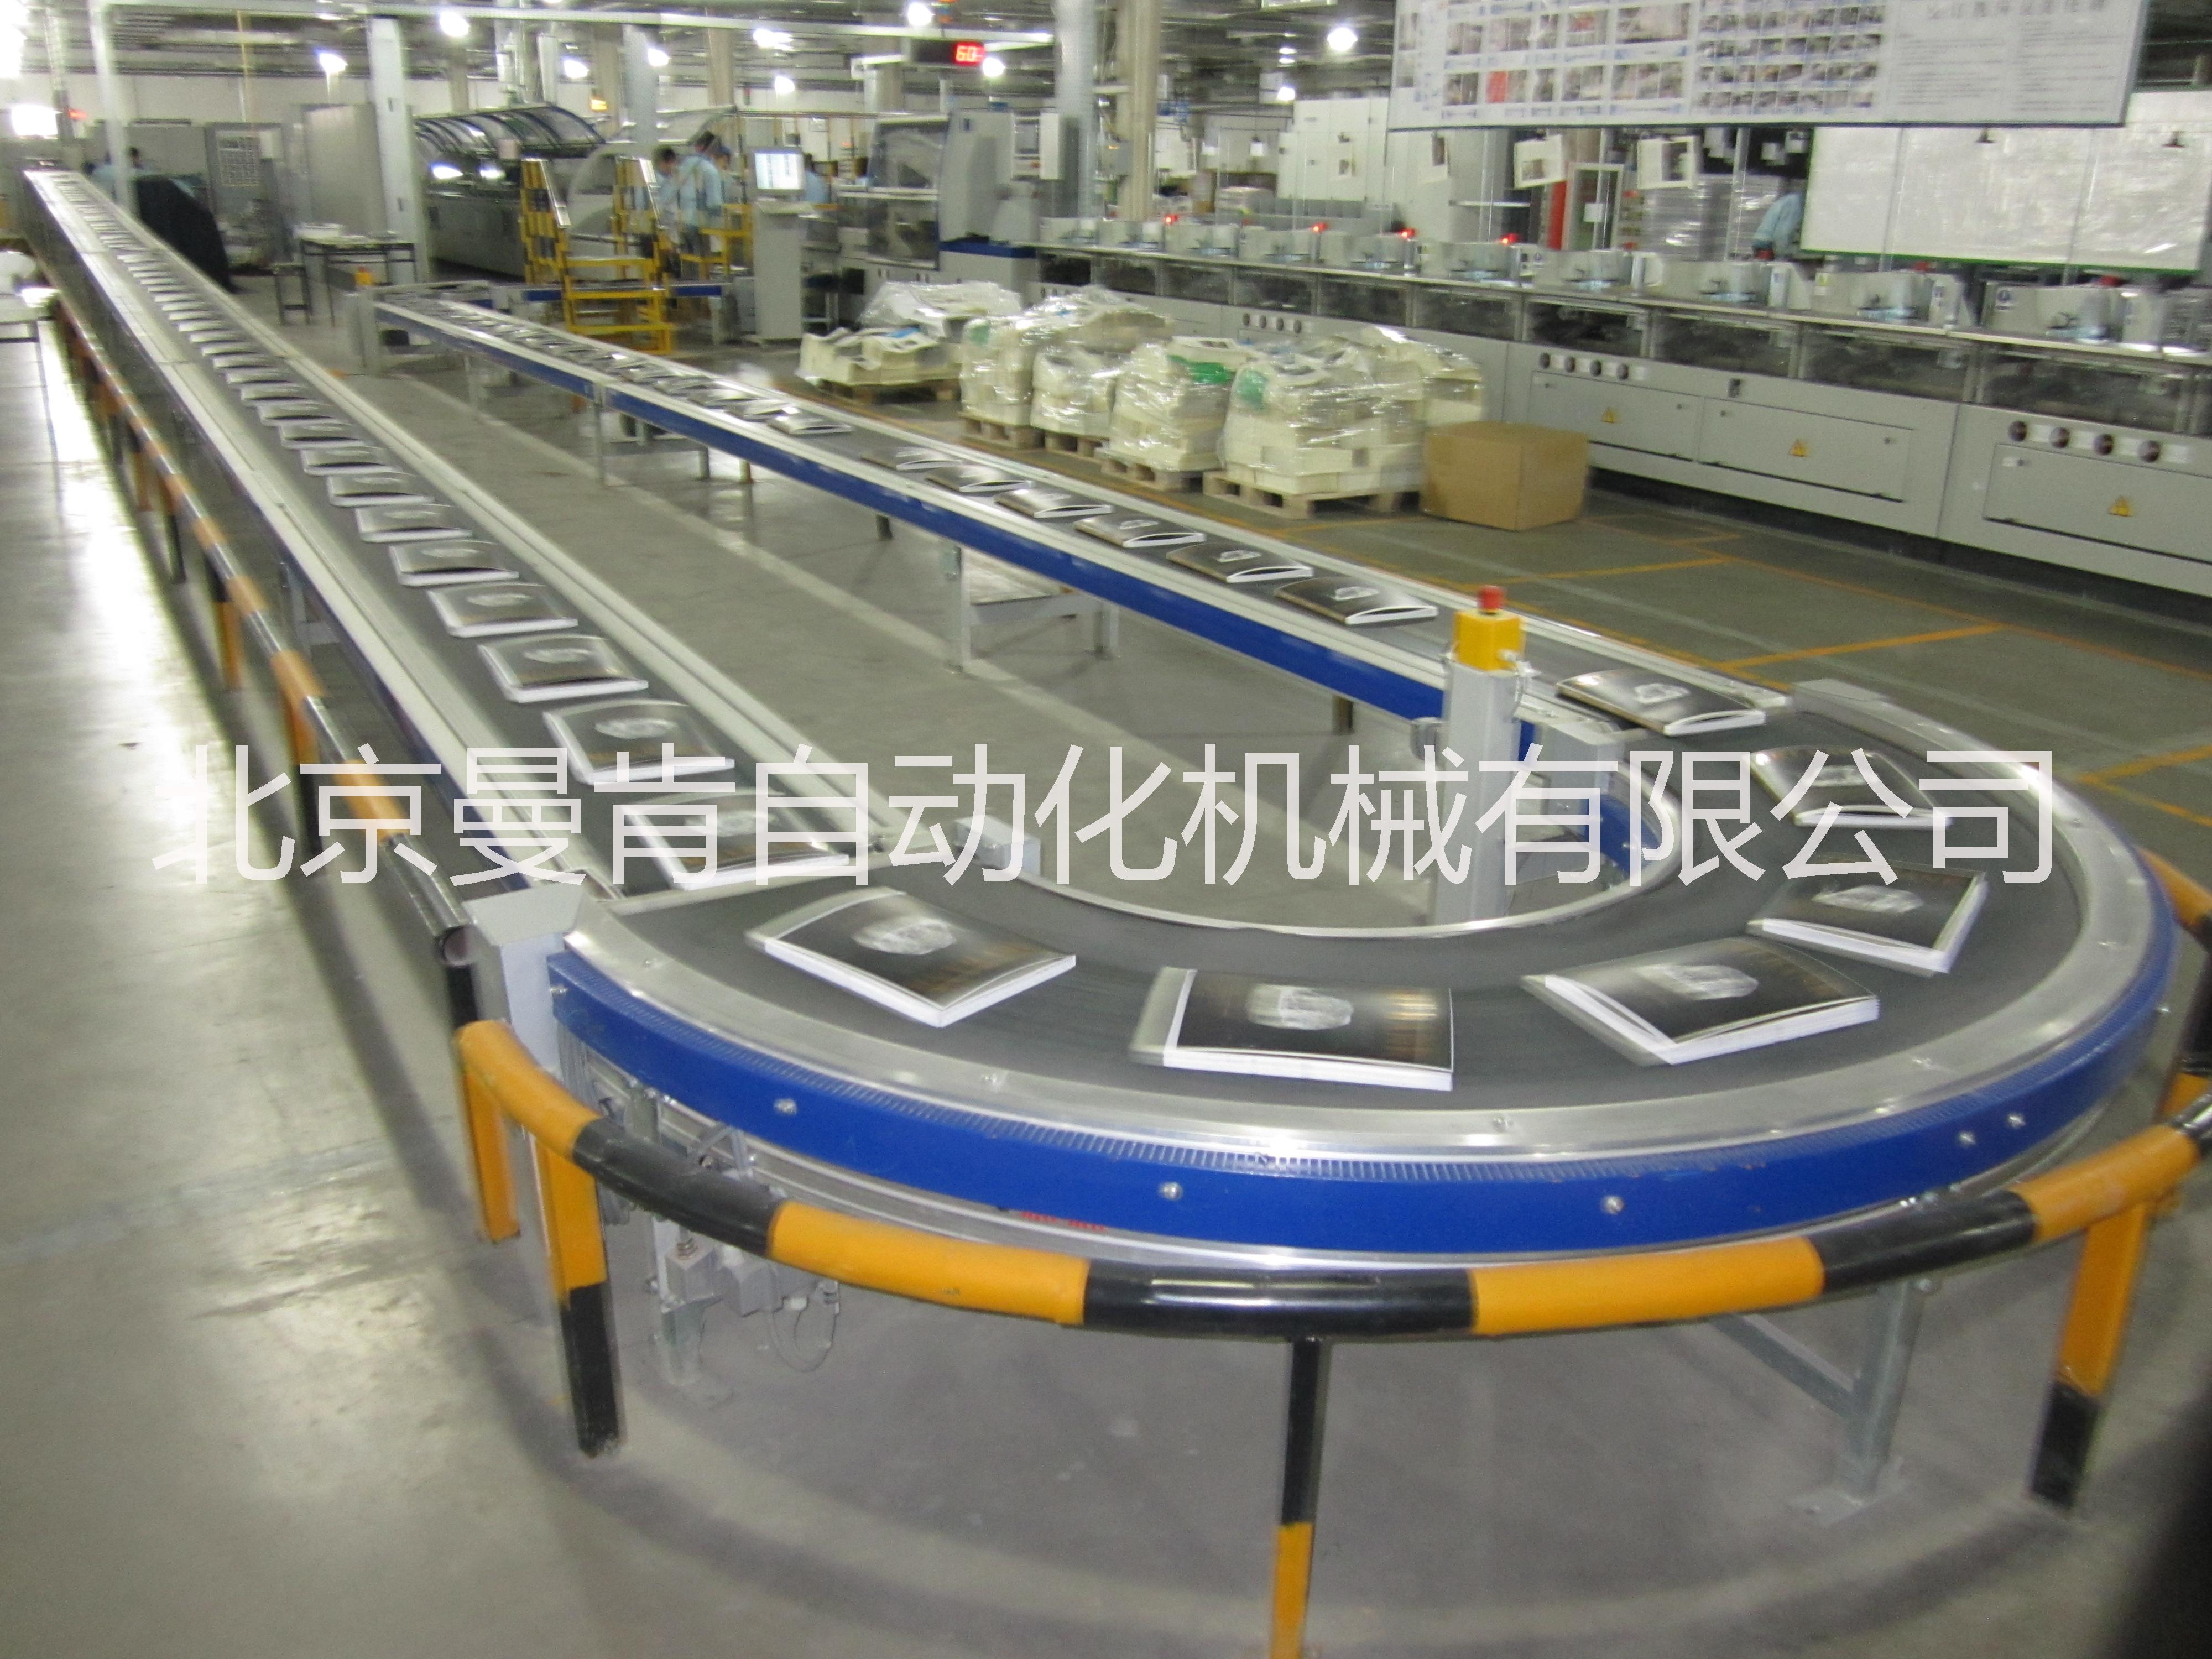 供应皮带输送机 皮带输送机生产厂家 北京皮带输送机生产厂家图片